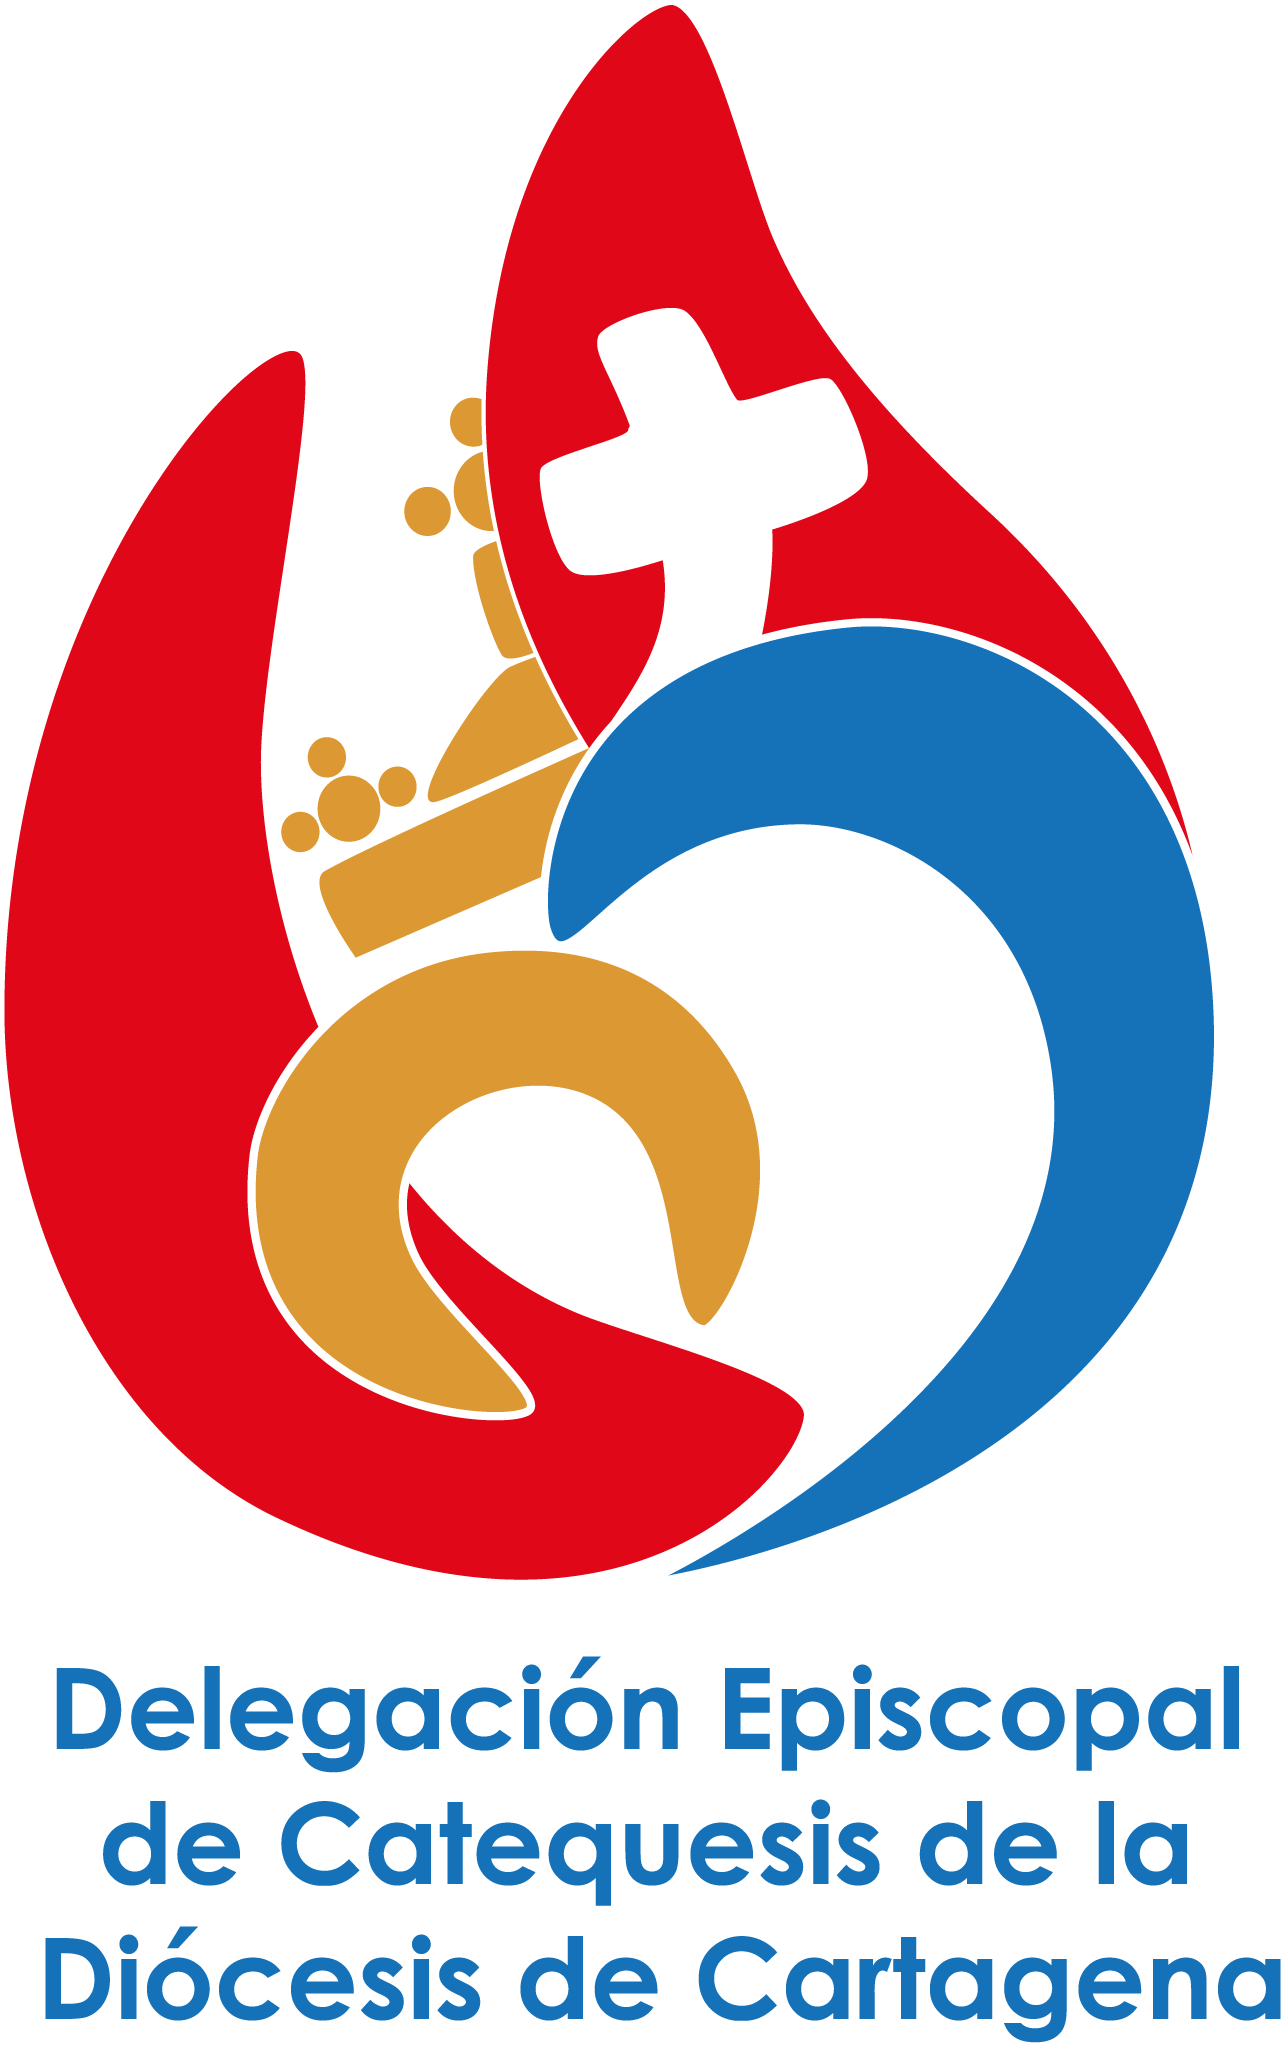 Logo Delegacion de Catequesis Cartagena.png